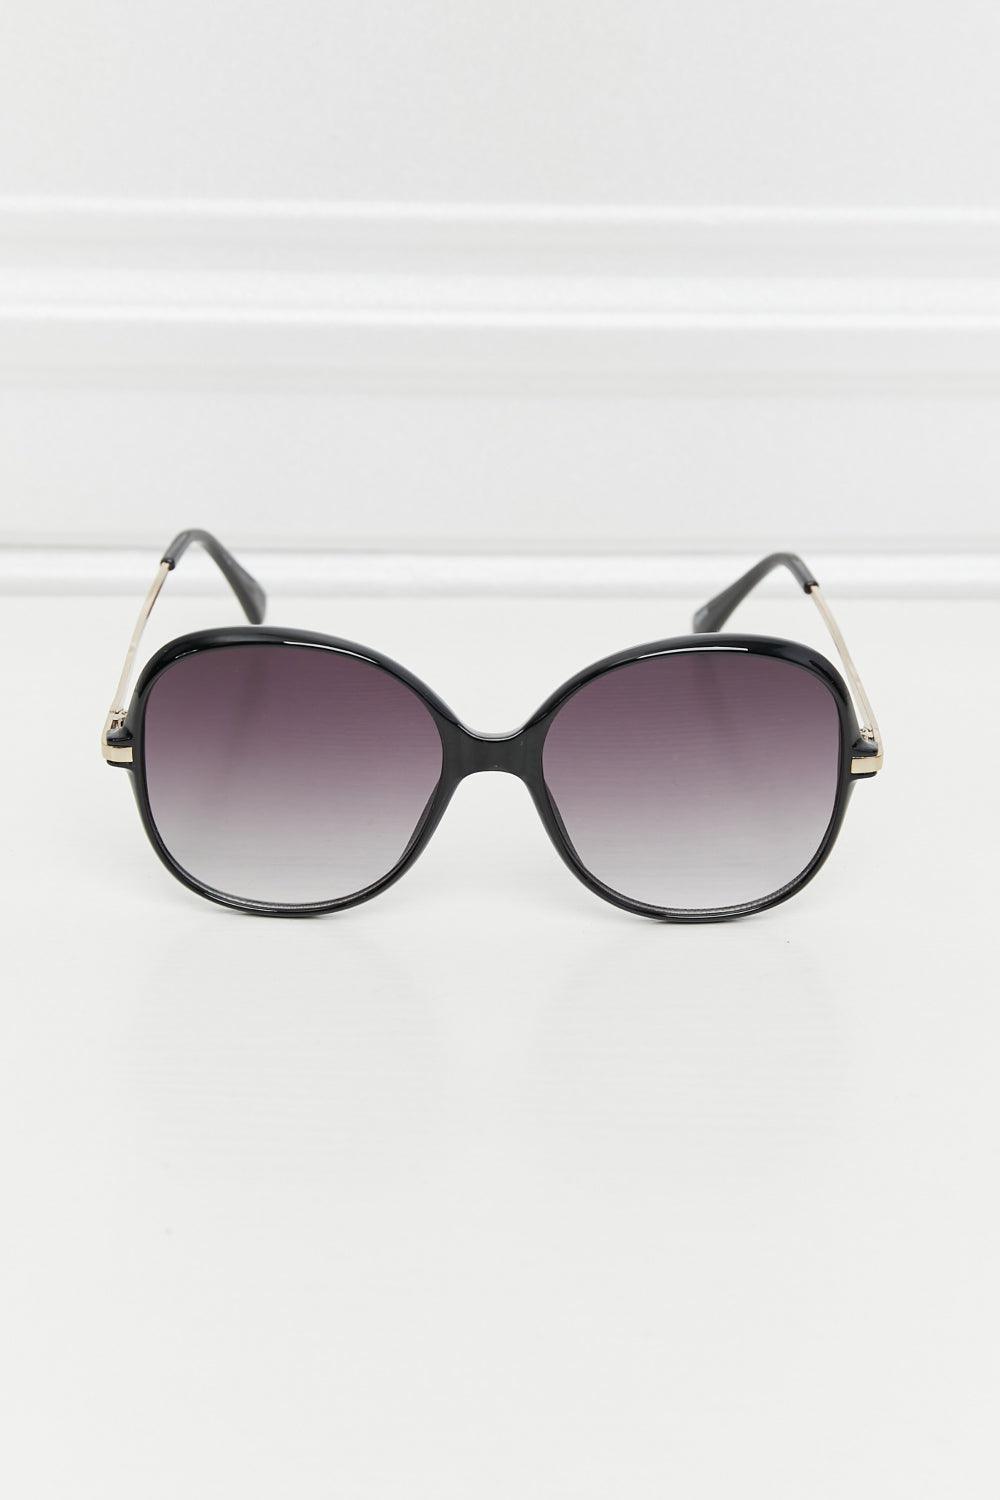 Women's Acetate Lens Square Sunglasses - MXSTUDIO.COM